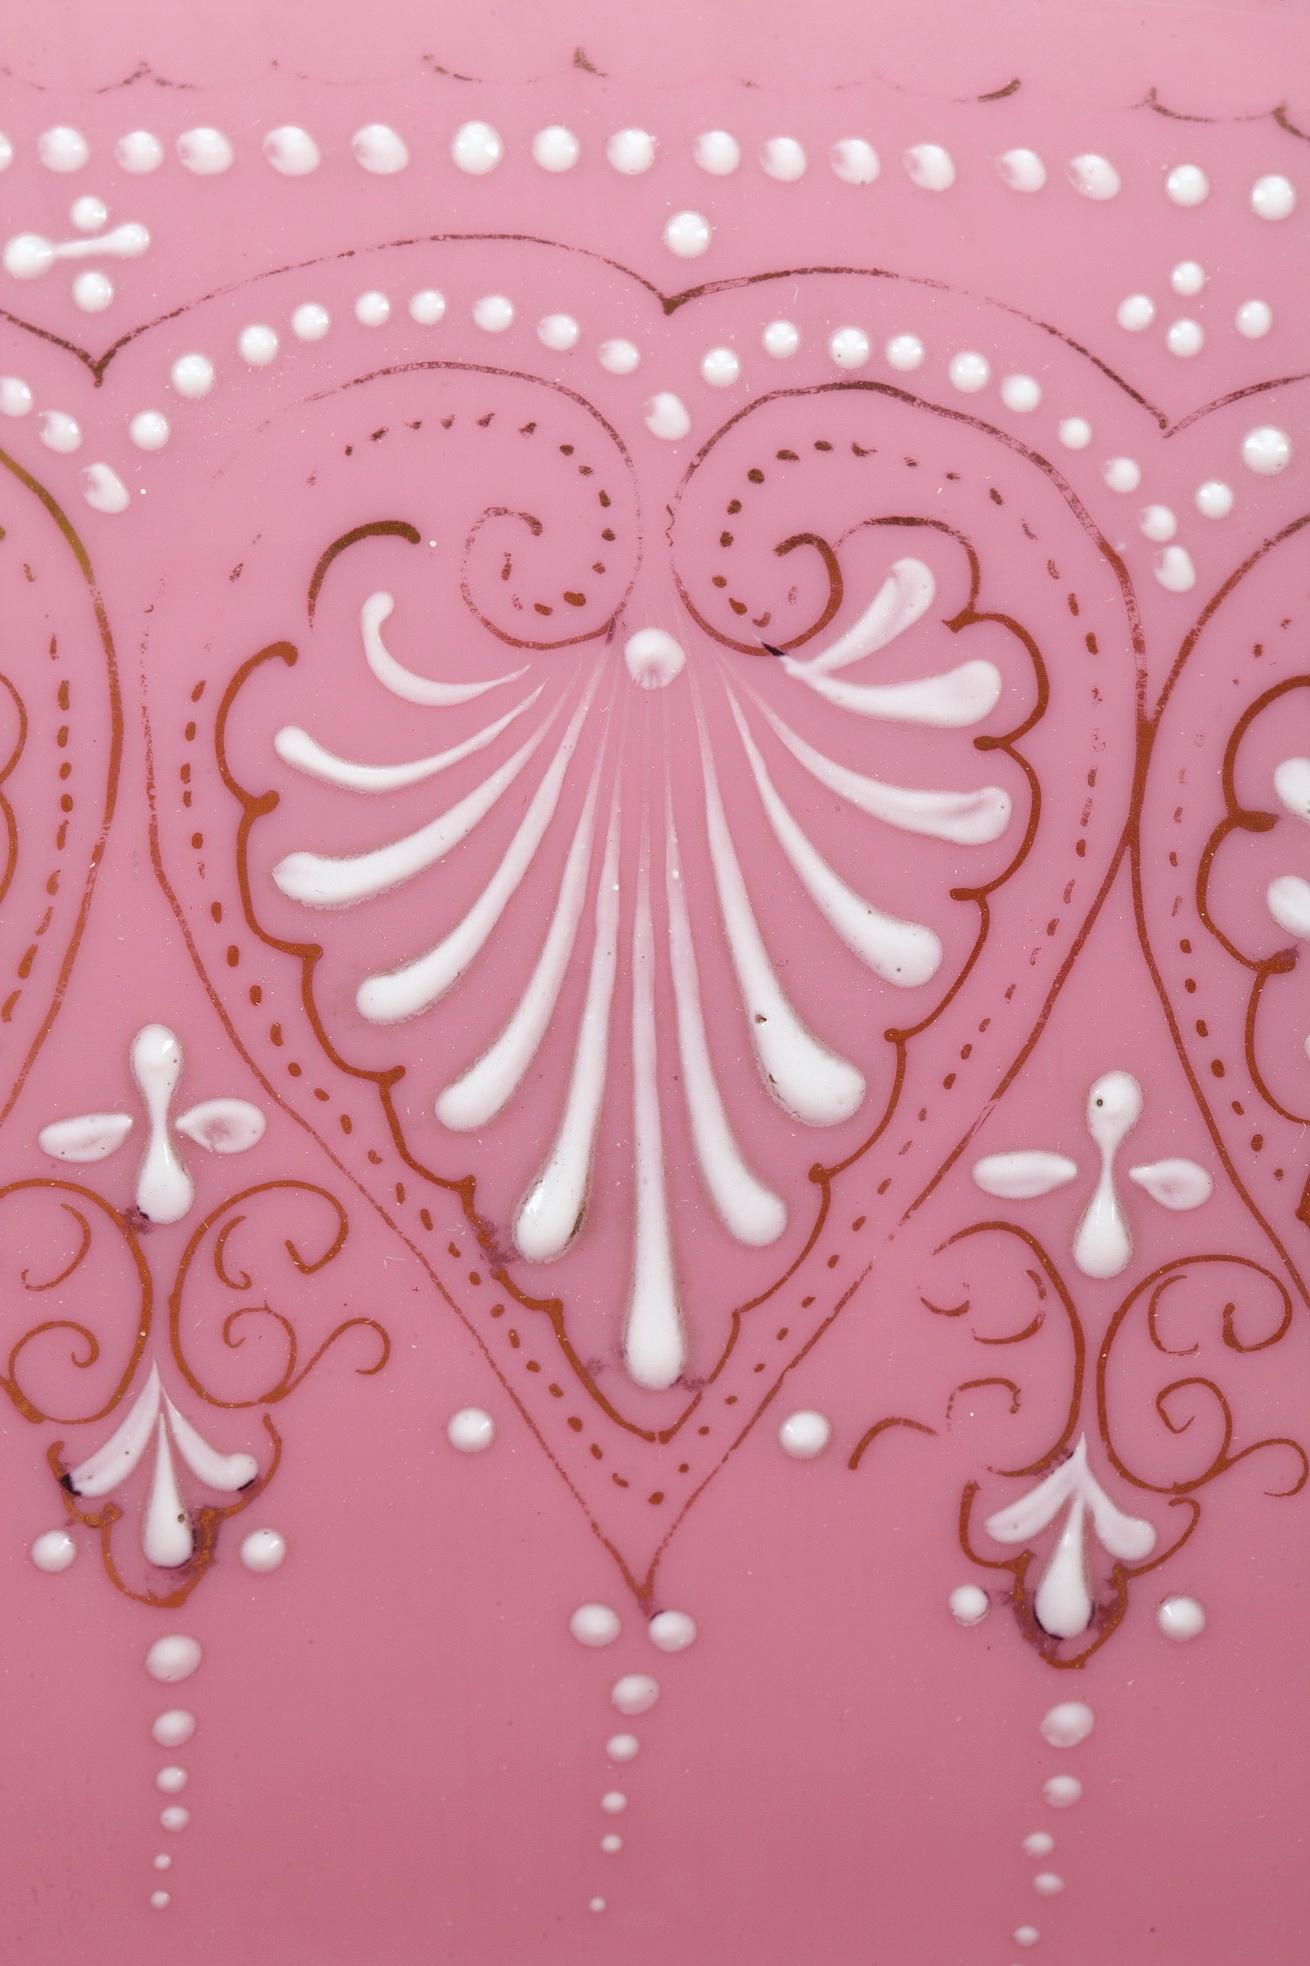 Grand pichet en opaline rose et son bassin, à décor émaillé blanc et or de palmettes, petites perles et motifs floraux. De larges bandes d'or soulignent le bord, l'anse et la base de cette aiguière ainsi que le bord du bassin. L'ensemble repose sur